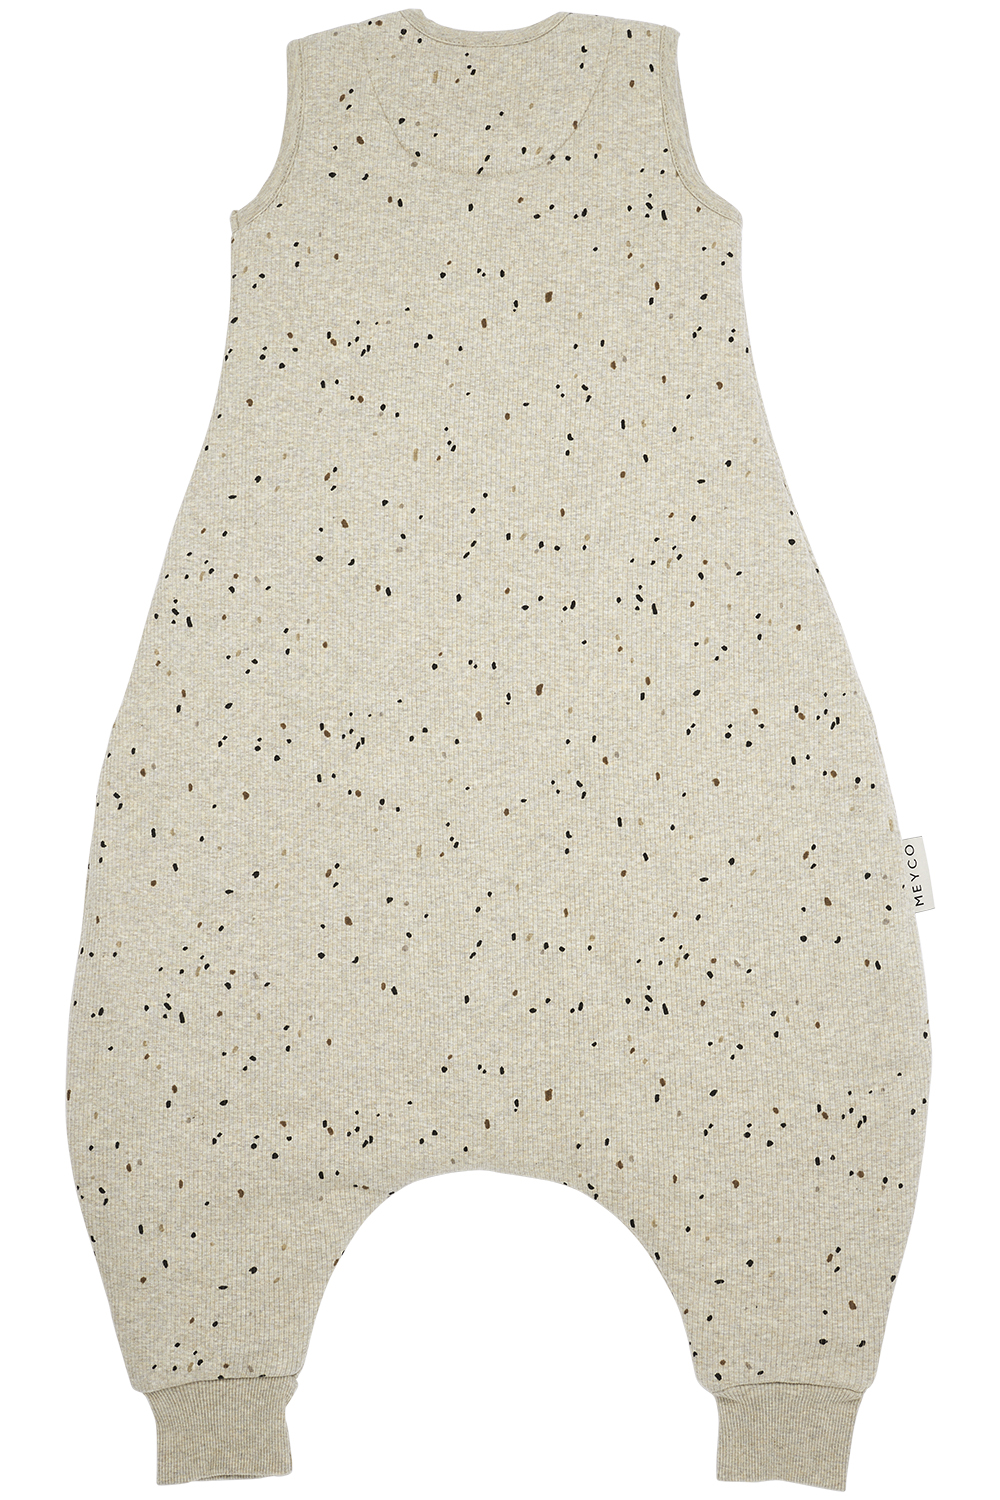 Baby winter sleep overall jumper Rib Mini Spot - sand melange - 104cm